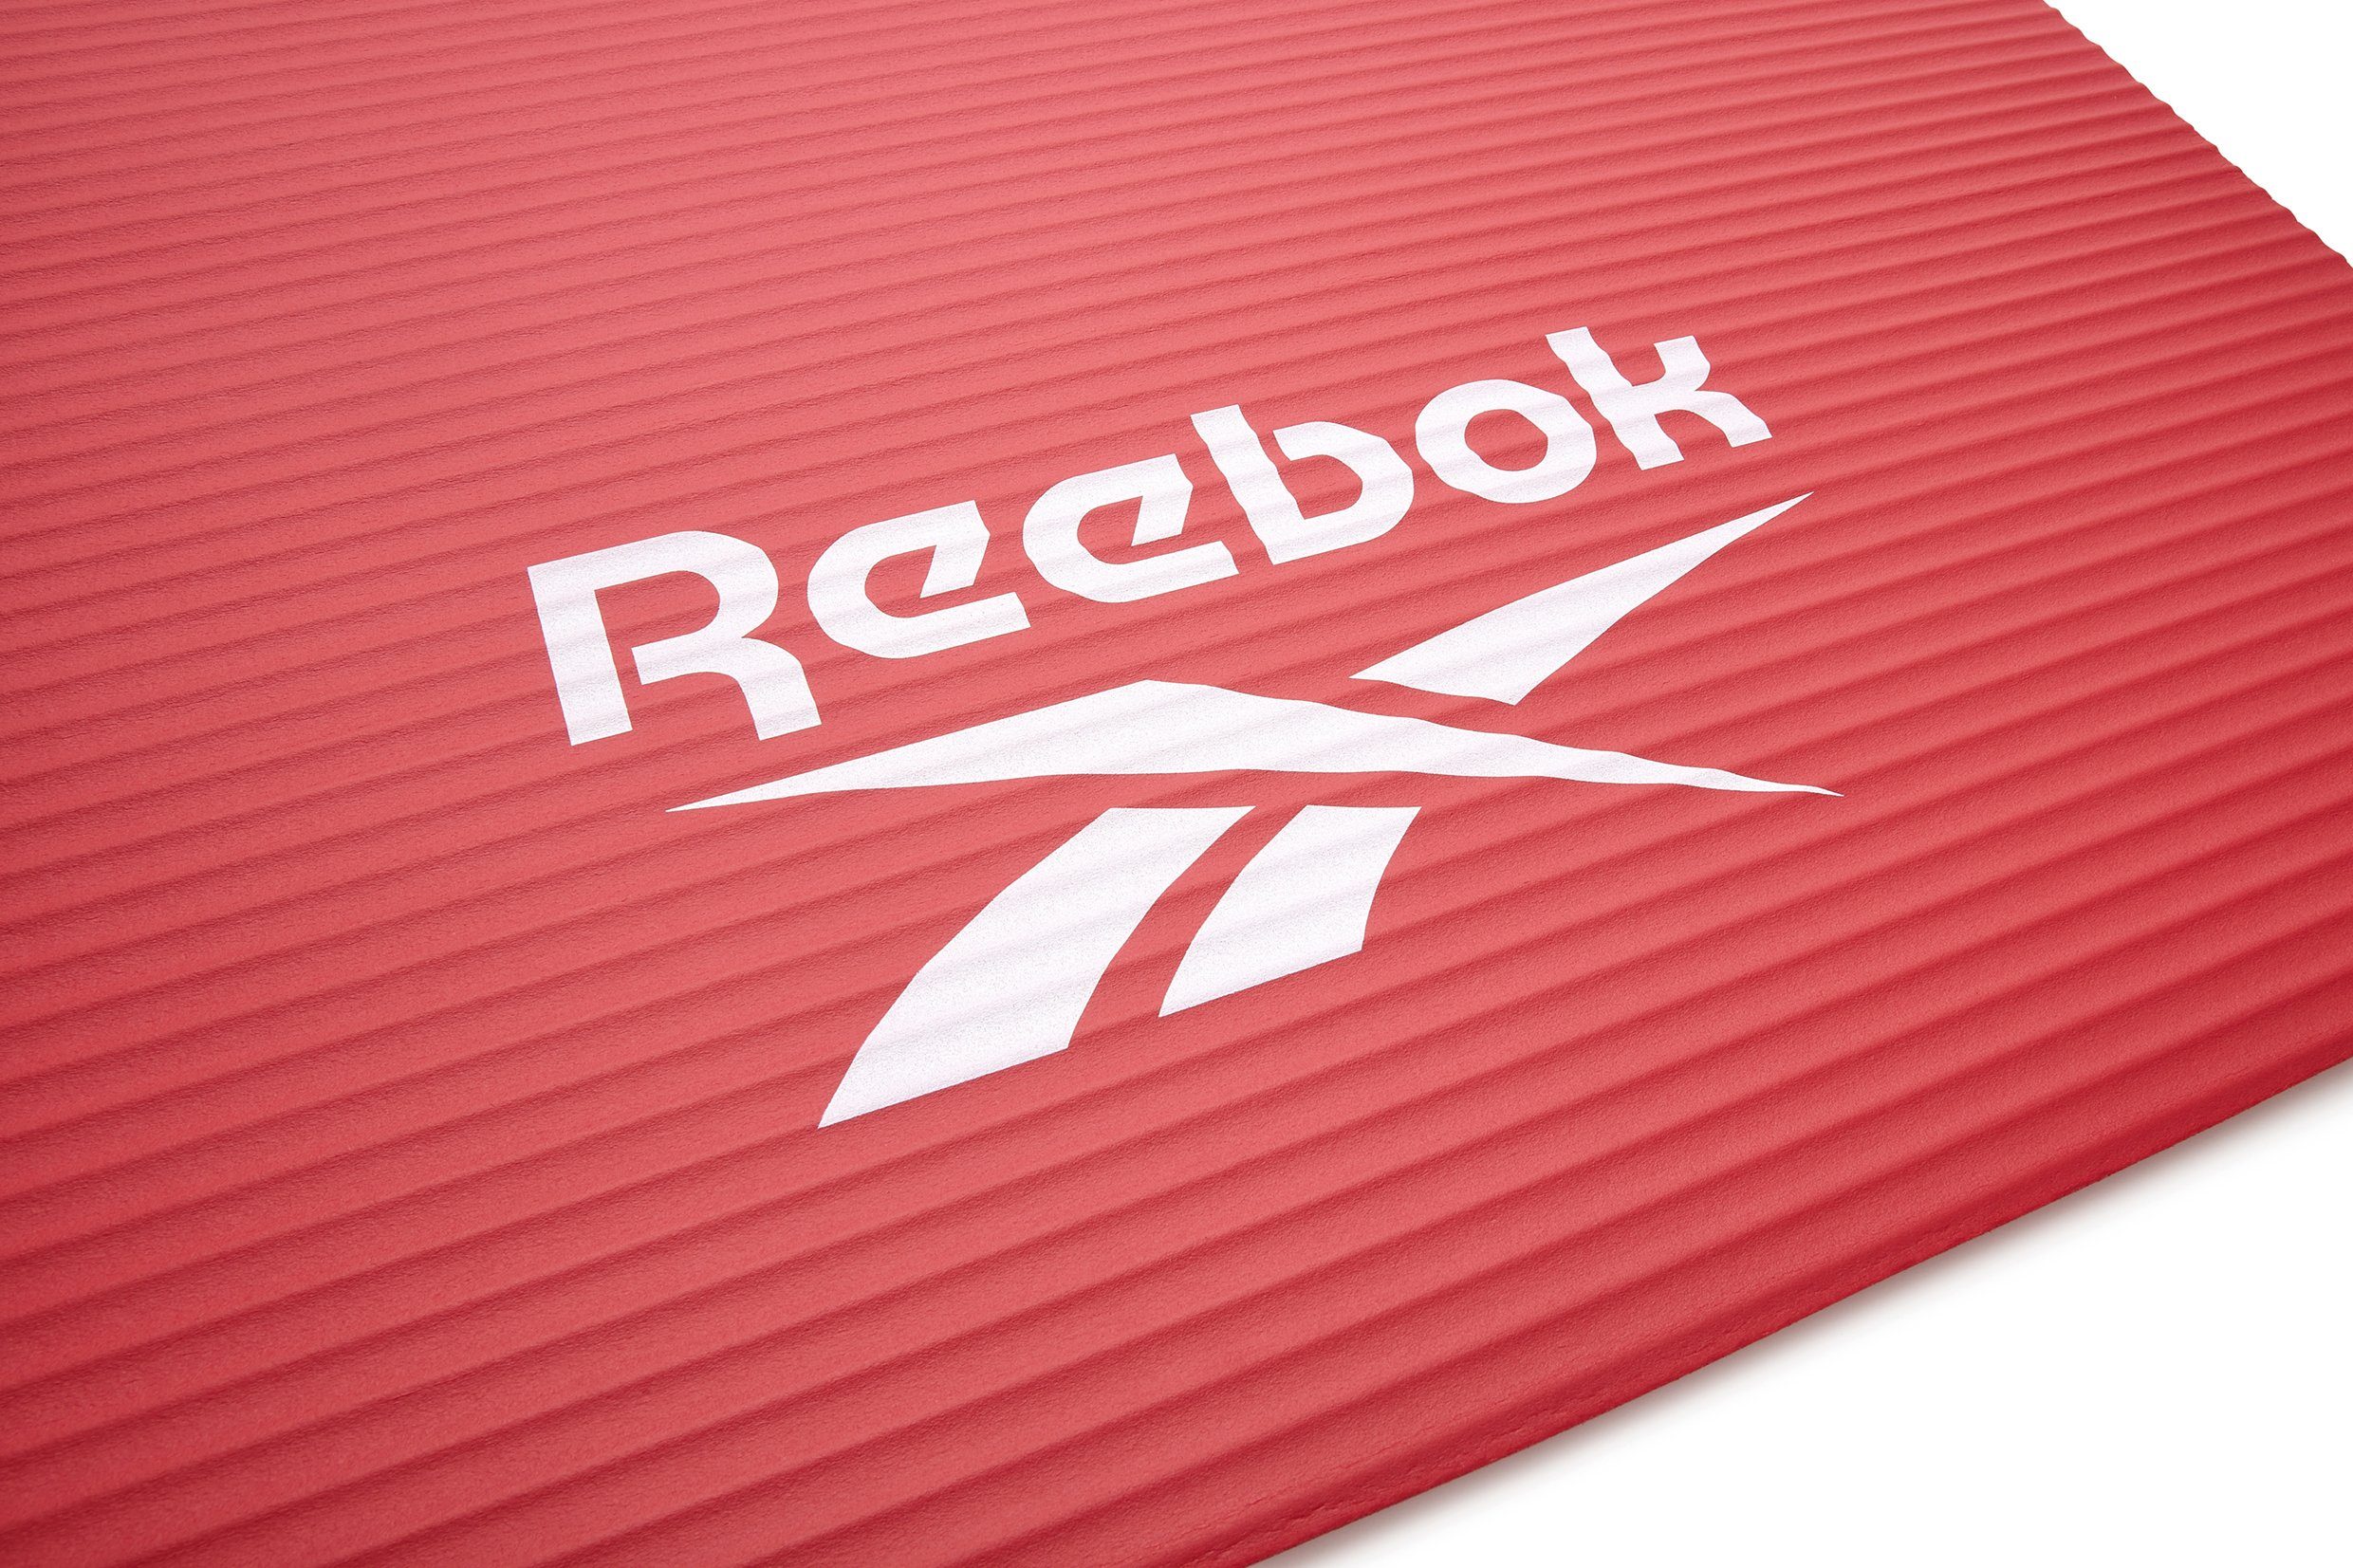 15mm, Fitnessmatte rot Reebok Reebok Rutschfeste Oberfläche Fitness-/Trainingsmatte,